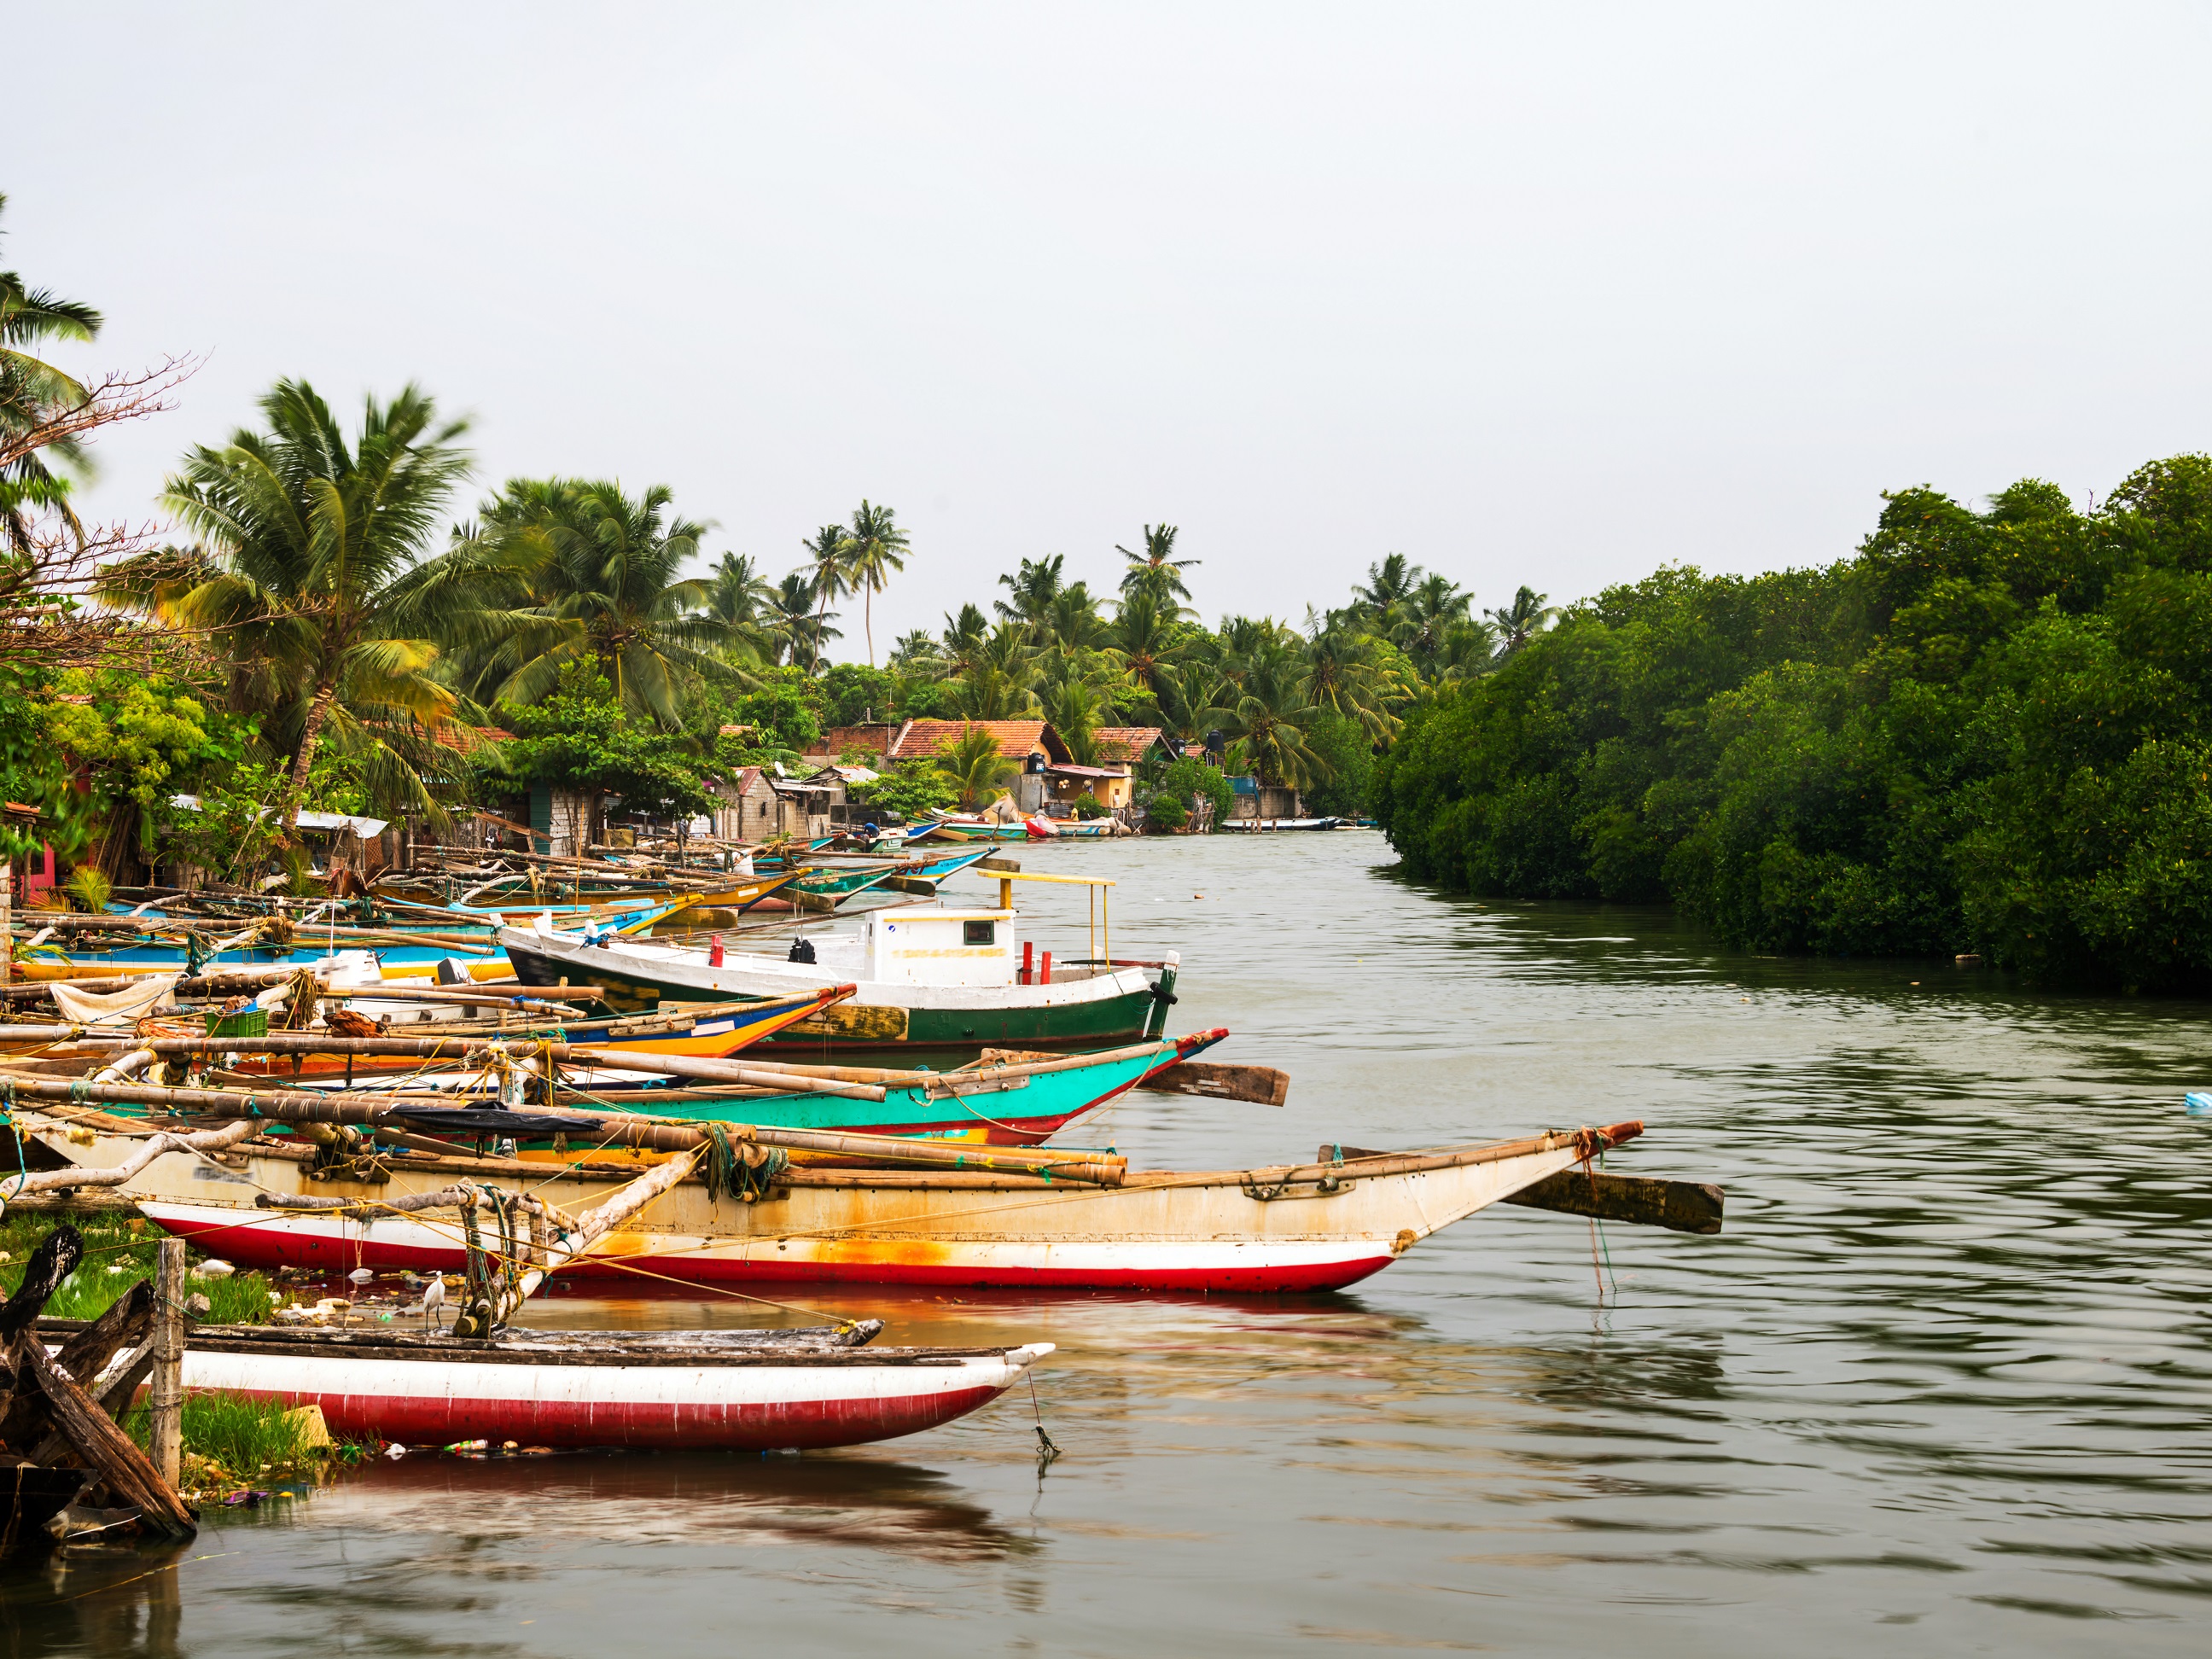 Sri Lanka - Negombo- Boats at little fishermen village in Negombo